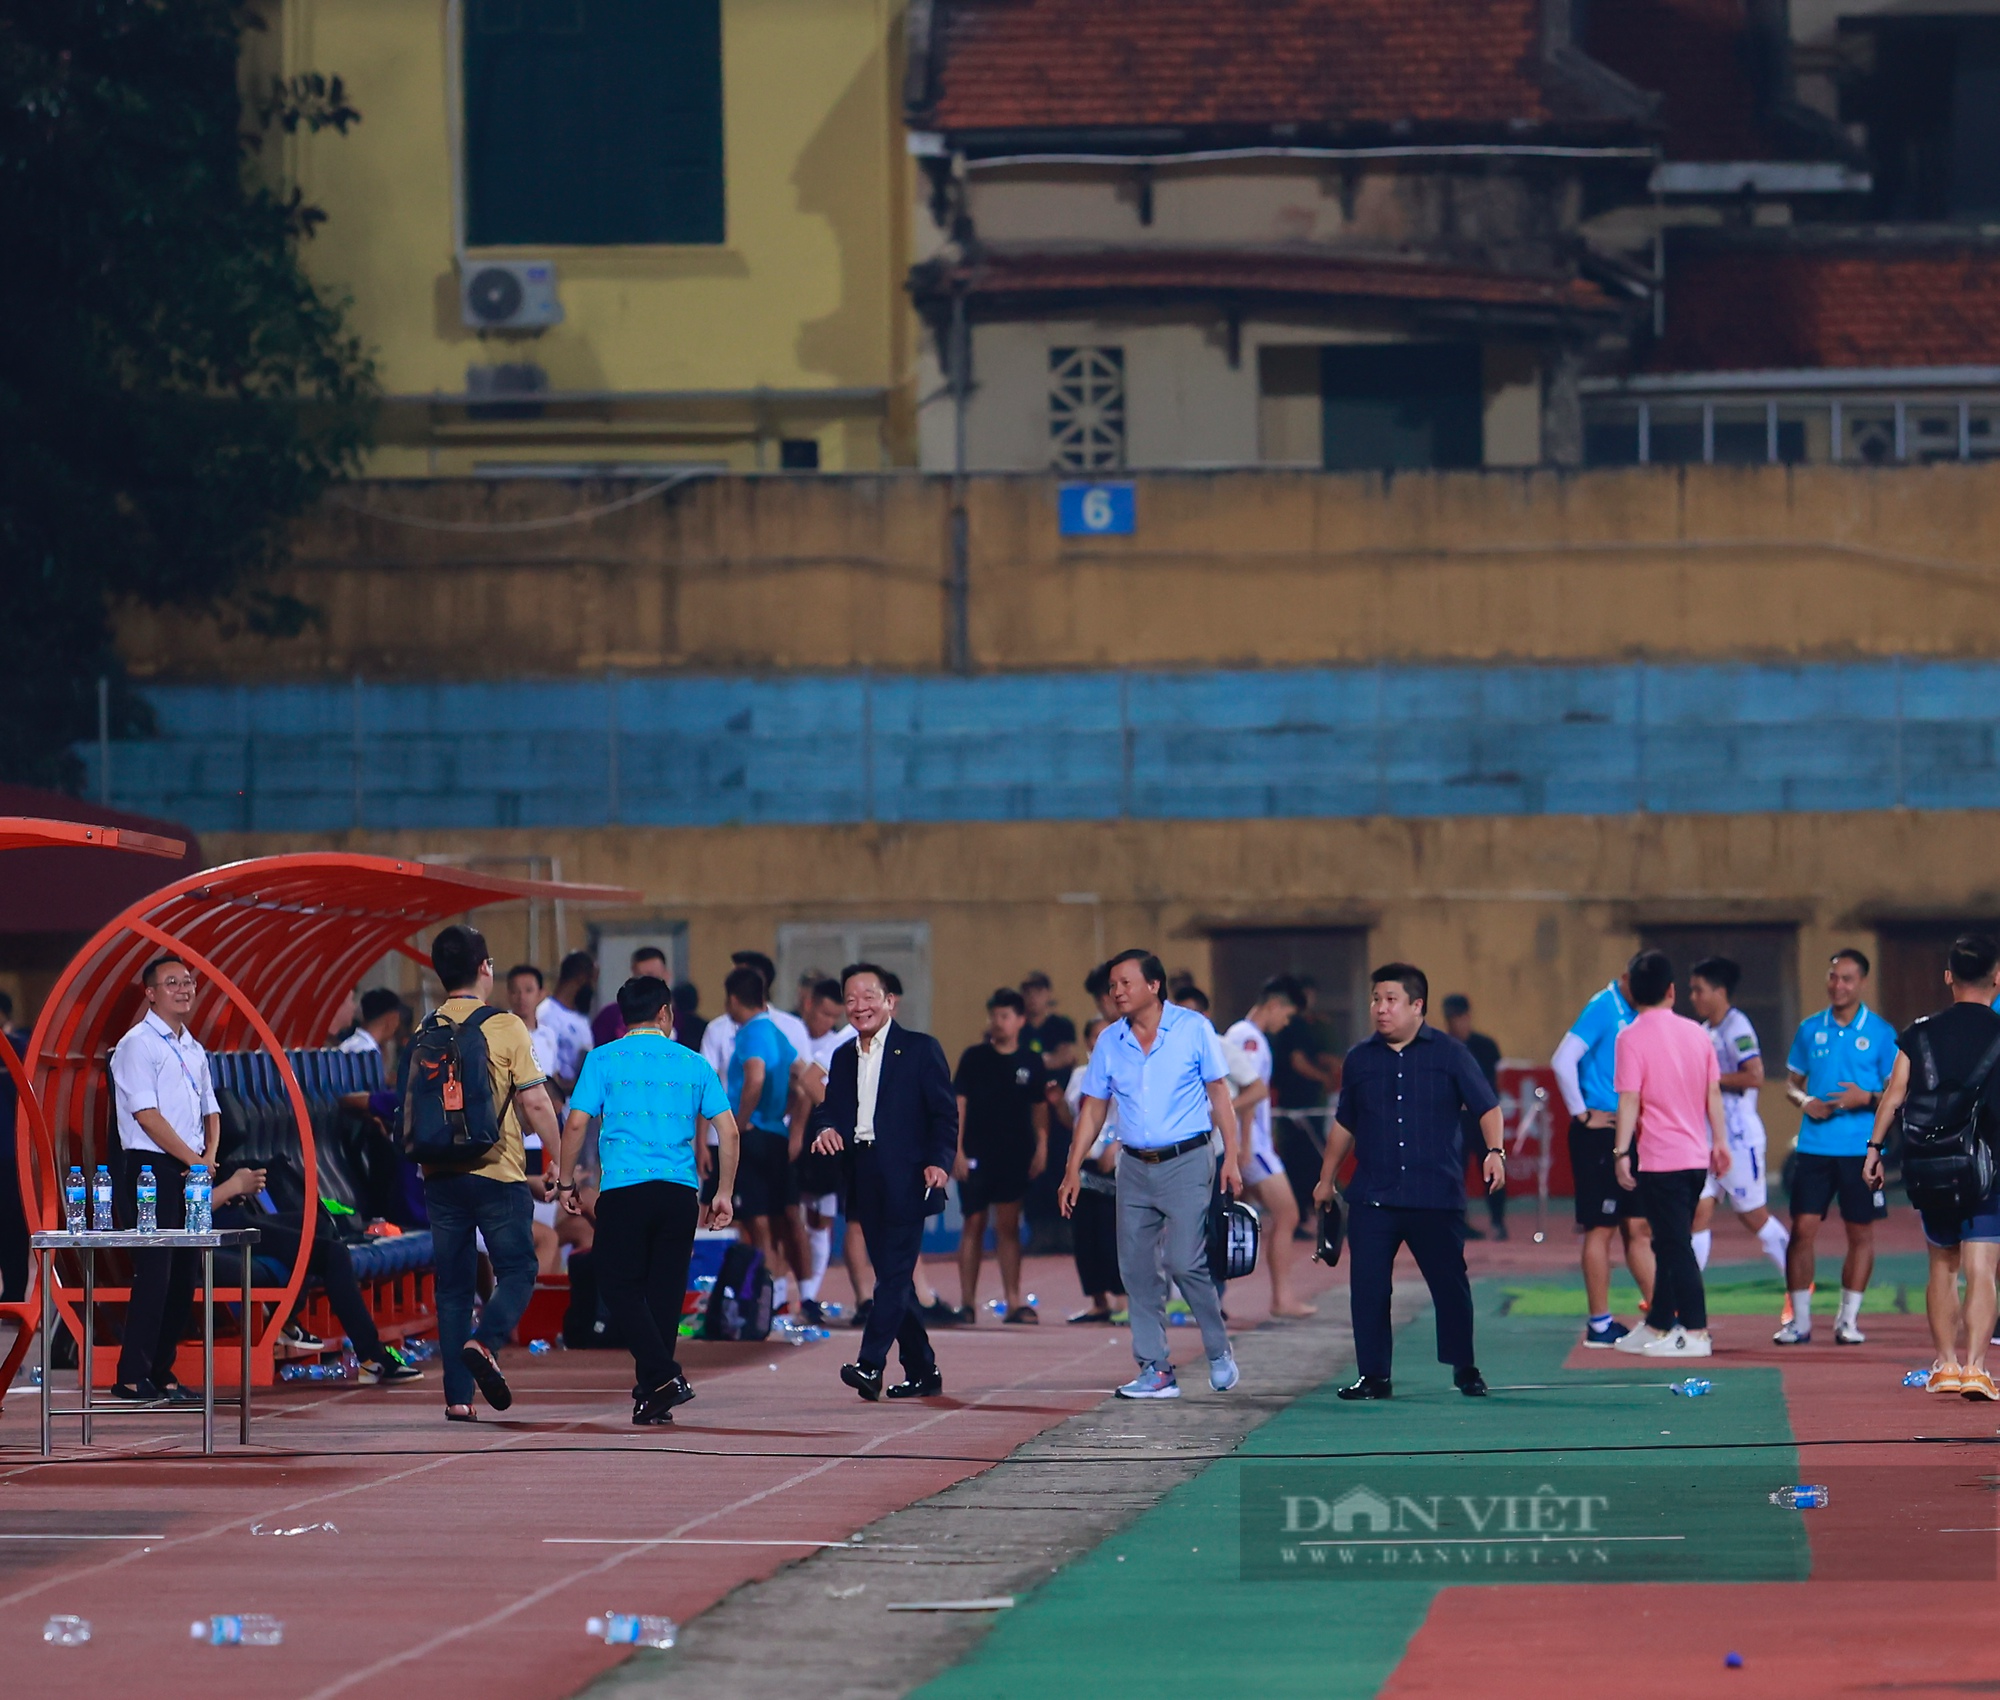 Đình Trọng cùng vợ đến sân theo dõi Bình Định FC thi đấu - Ảnh 7.